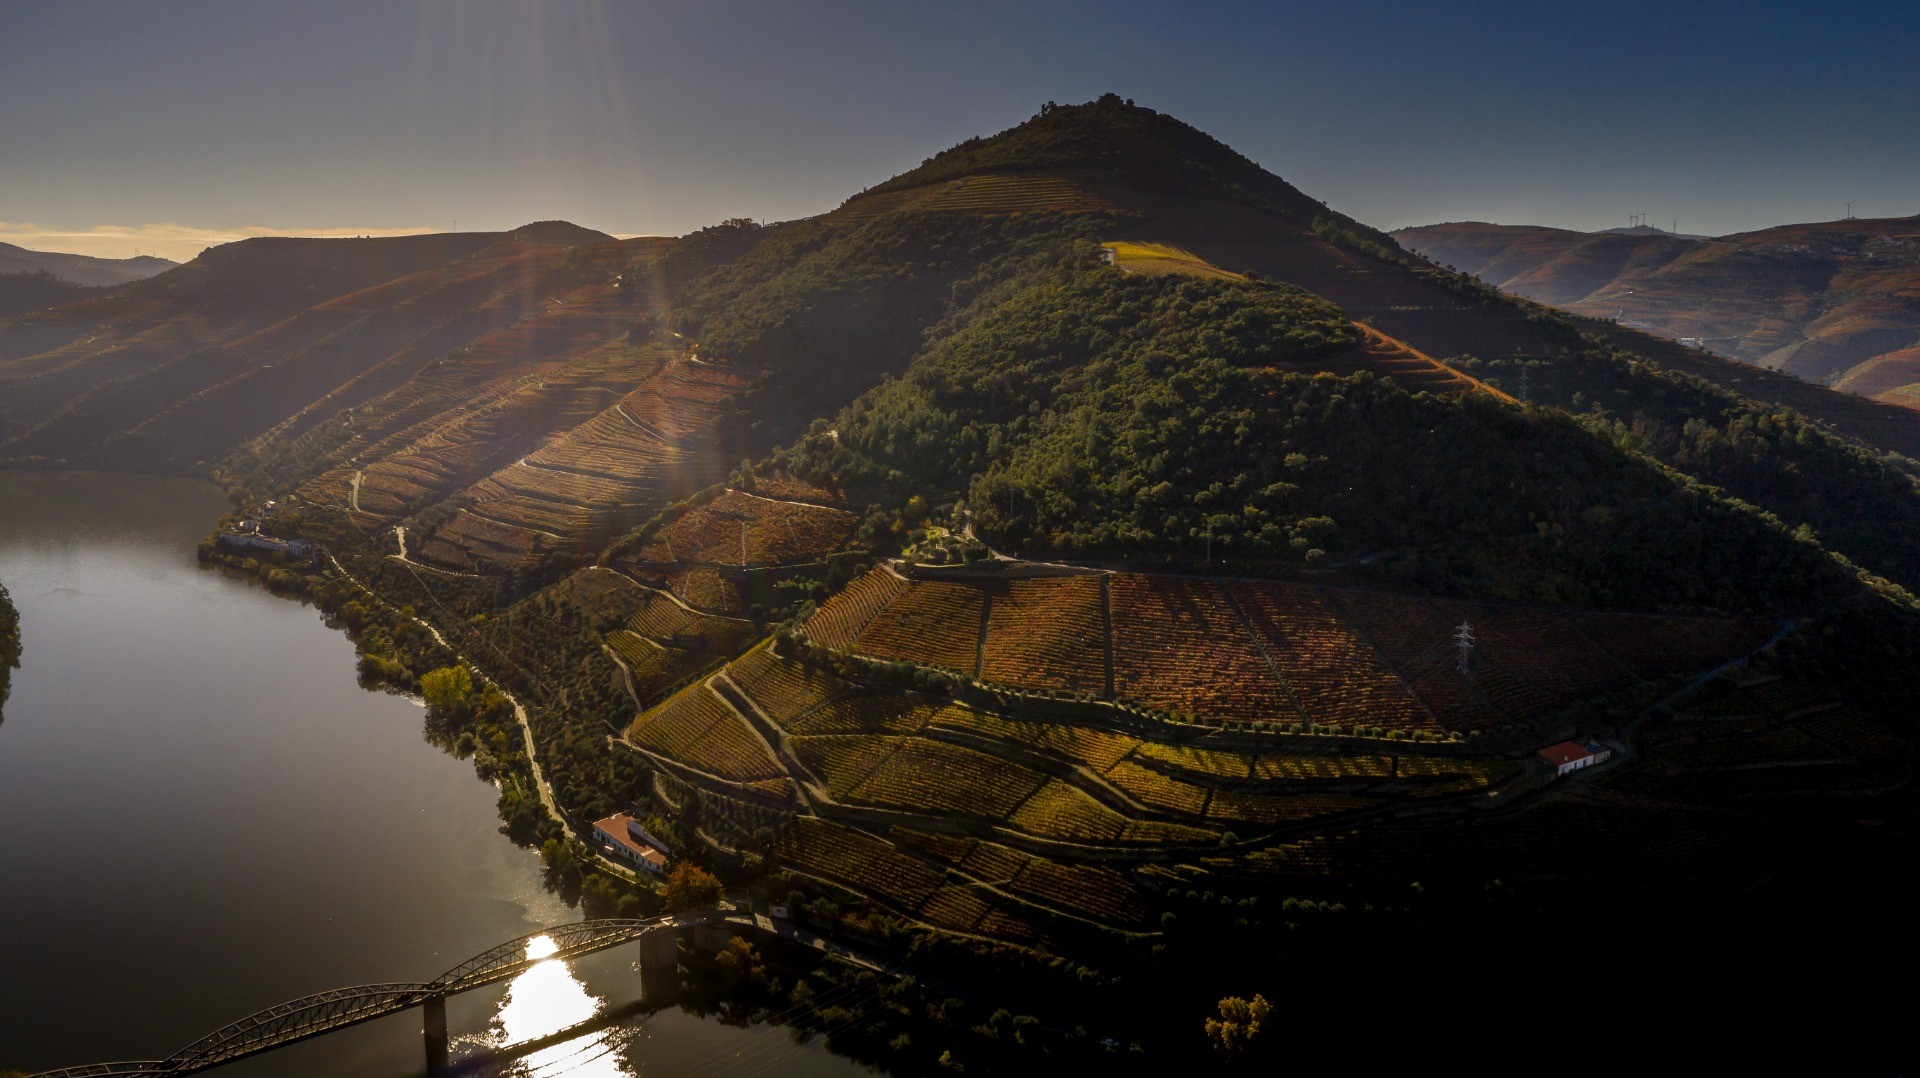 Quinta das Carvalhas – An incredible beauty in Douro Valley